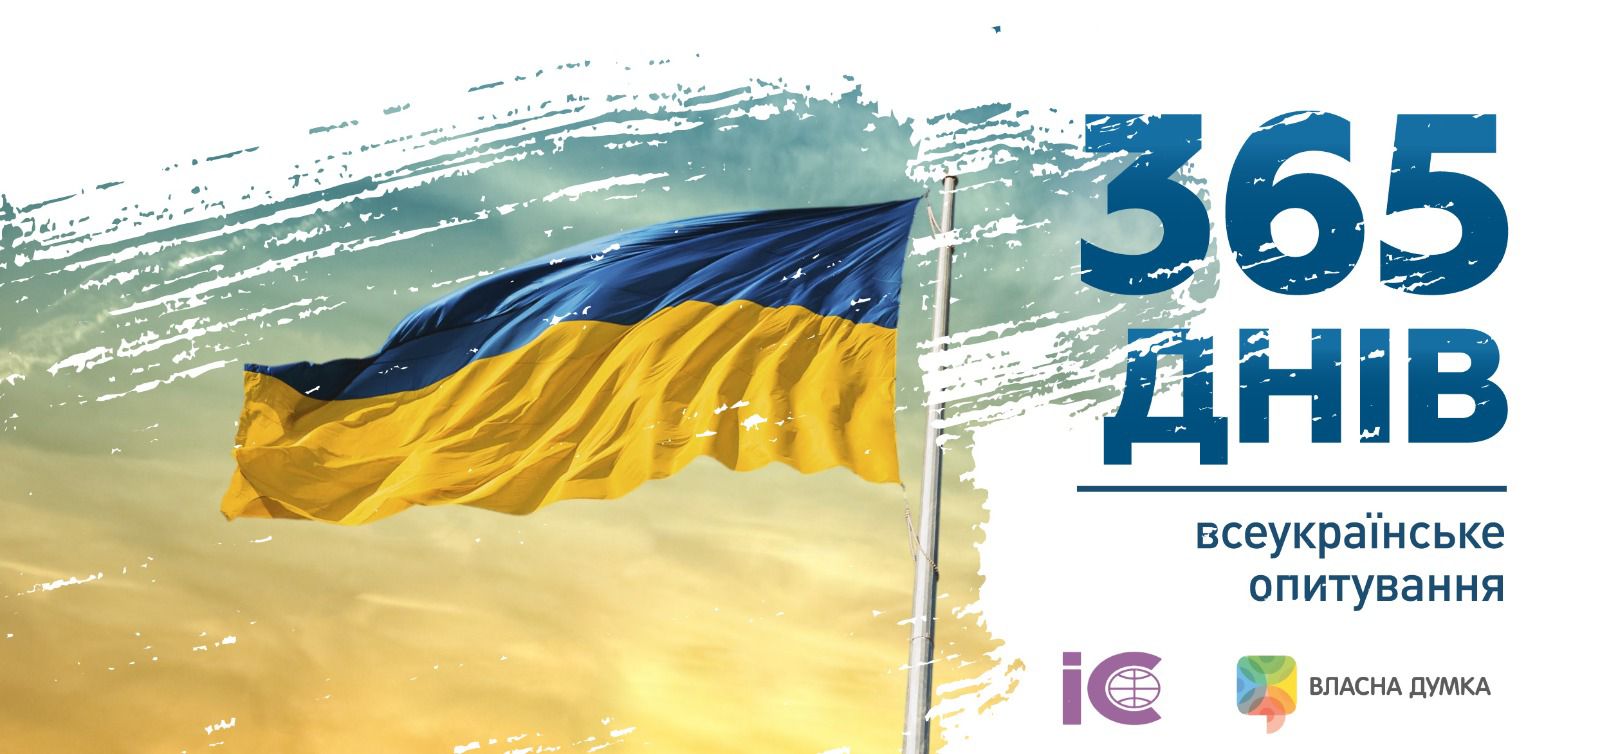 365 днів війни: долучайтесь до всеукраїнського опитування